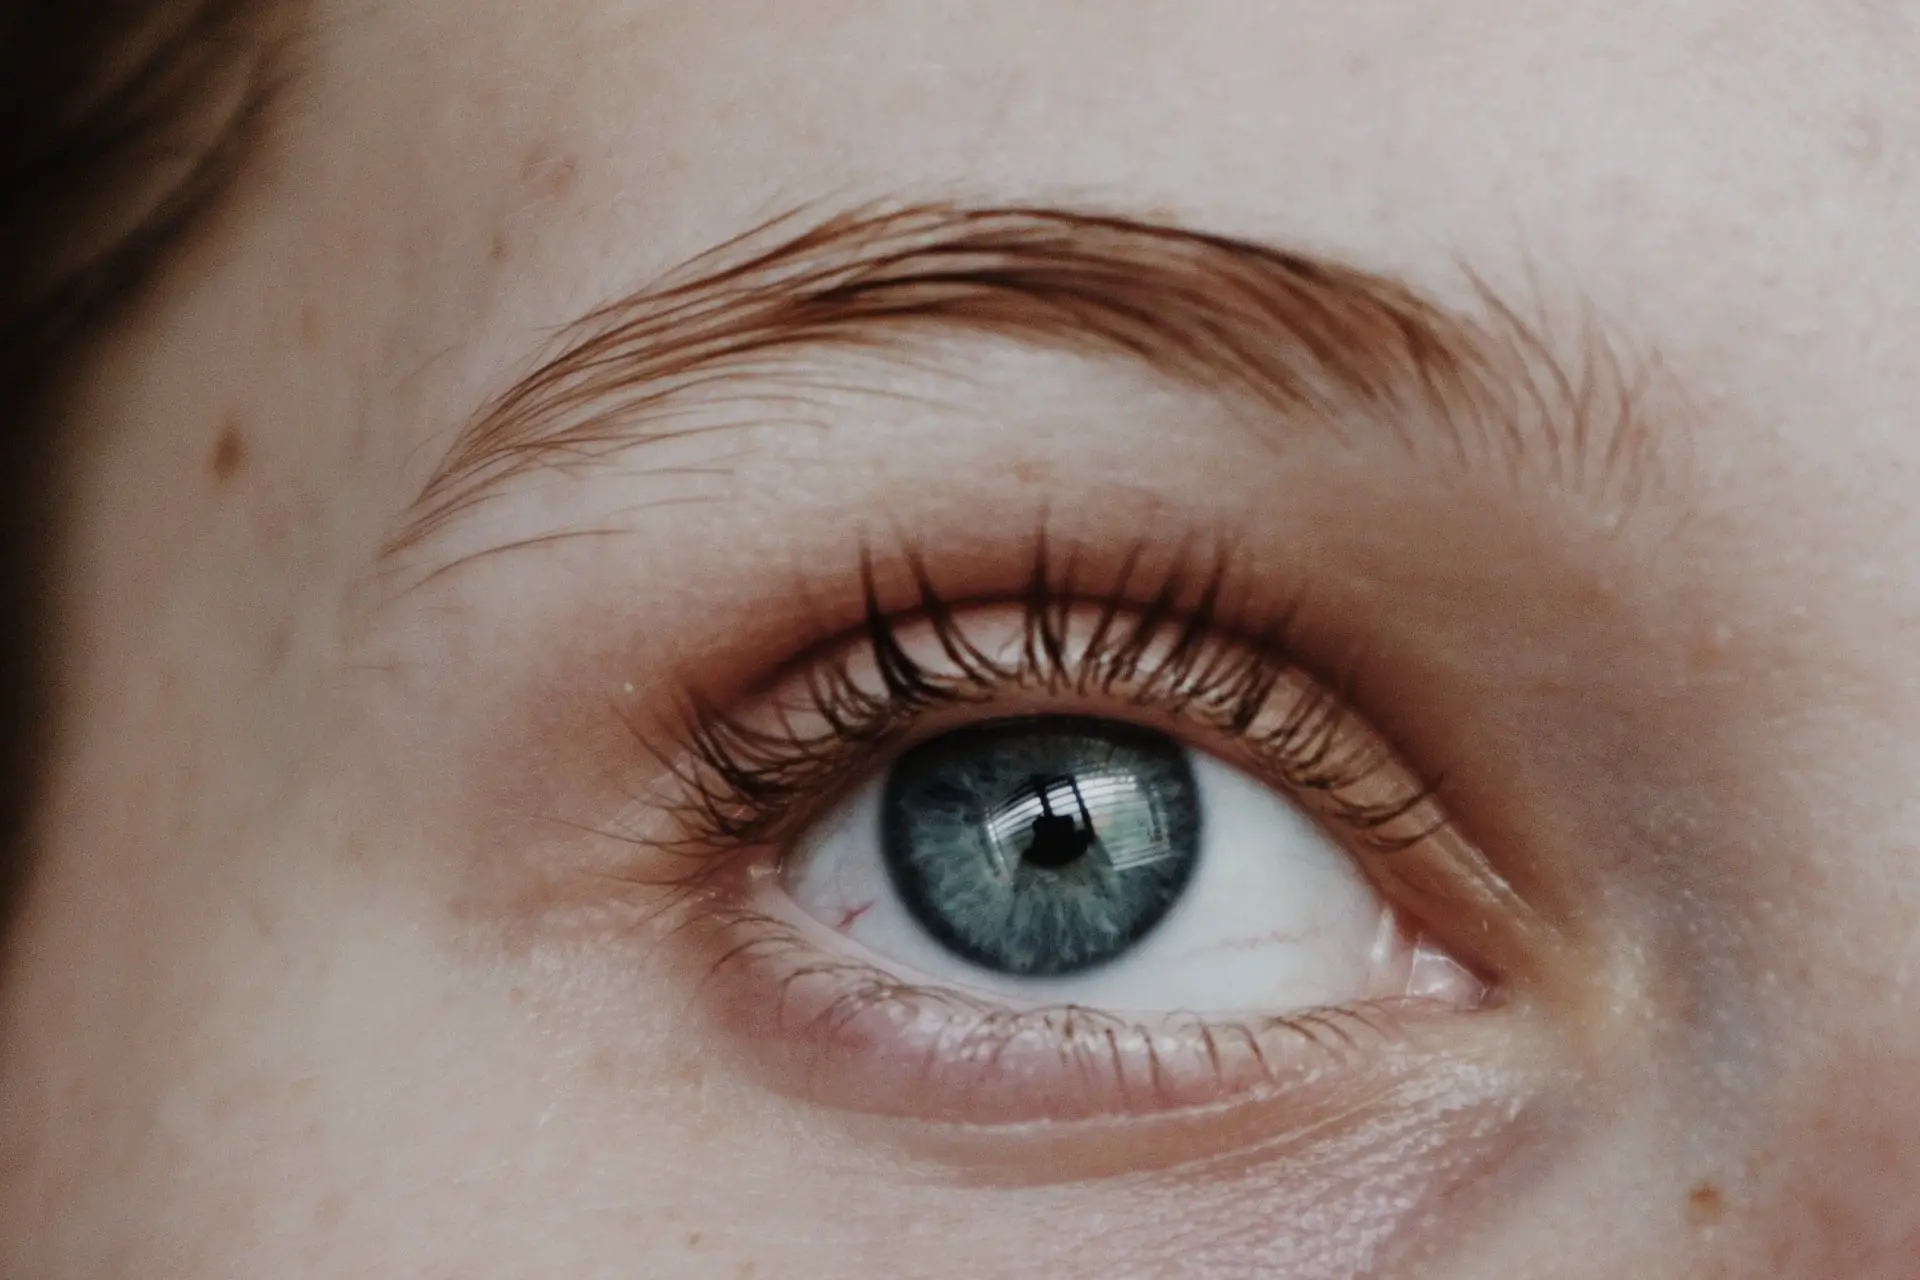 Does Mascara Make Your Eyelashes Grow?